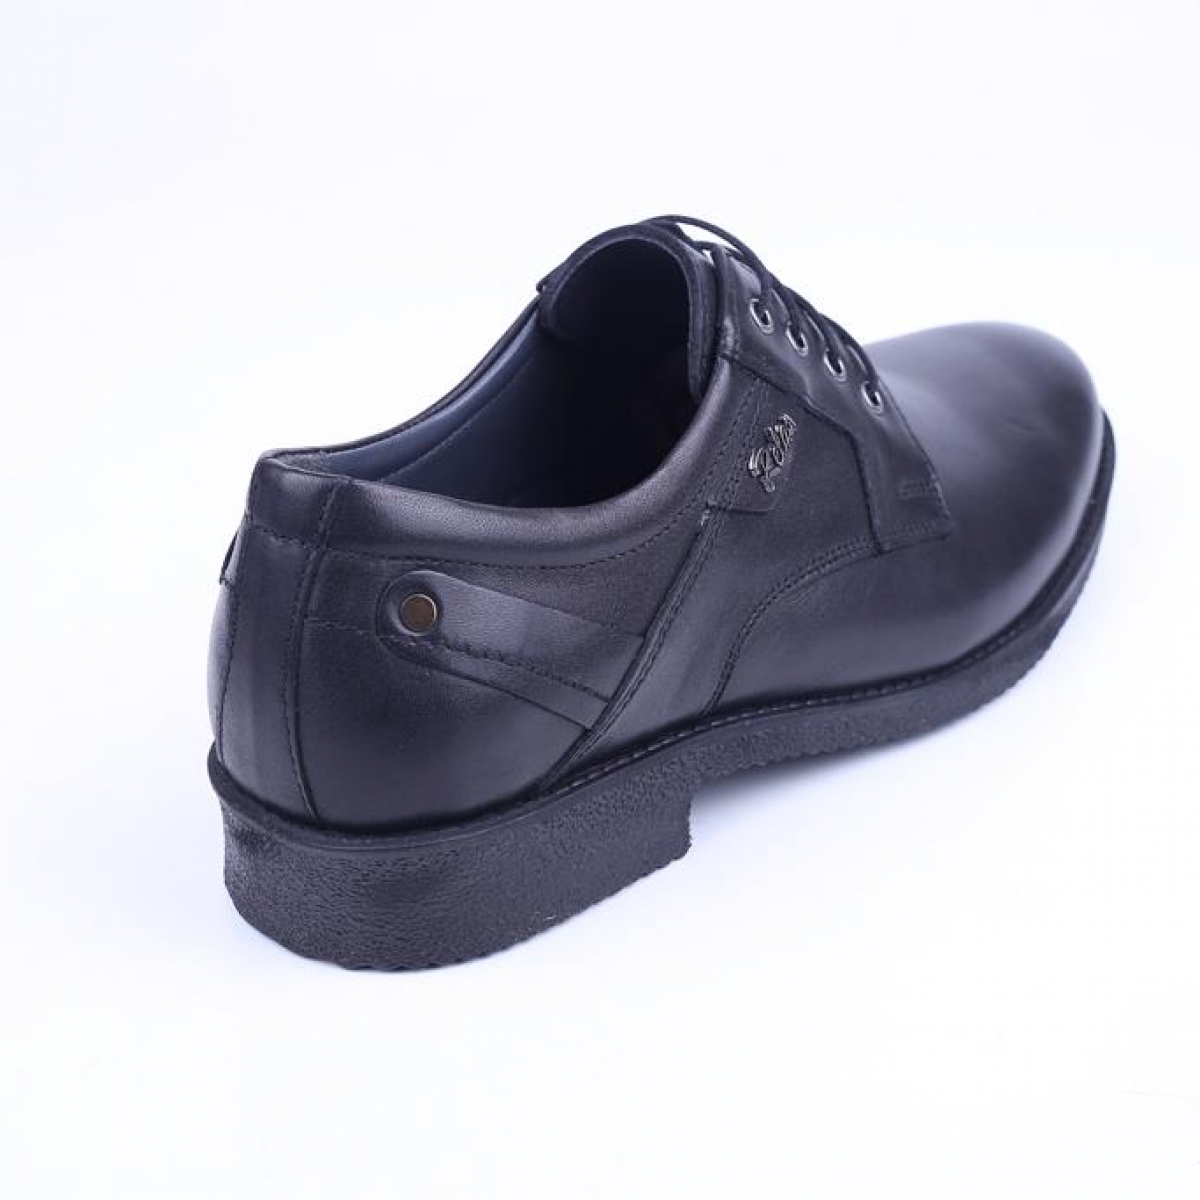 Flo Cmf 27 Erkek Hakiki Deri Bağcıklı Klasik Ayakkabı. 3